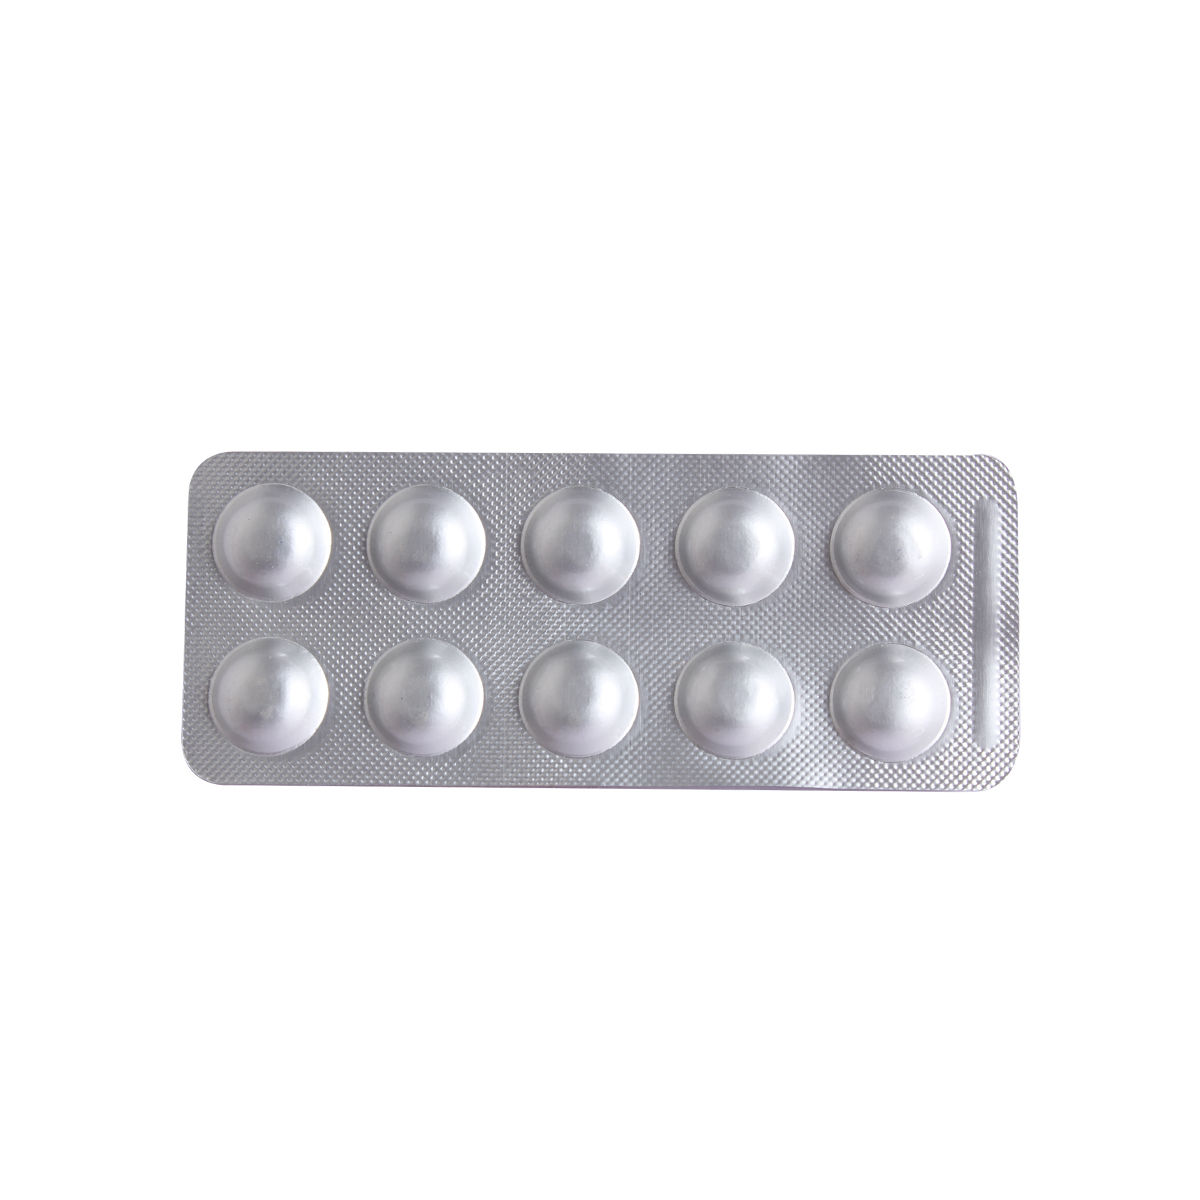 Buy Deritas 7.5 mg Tablet 10's Online